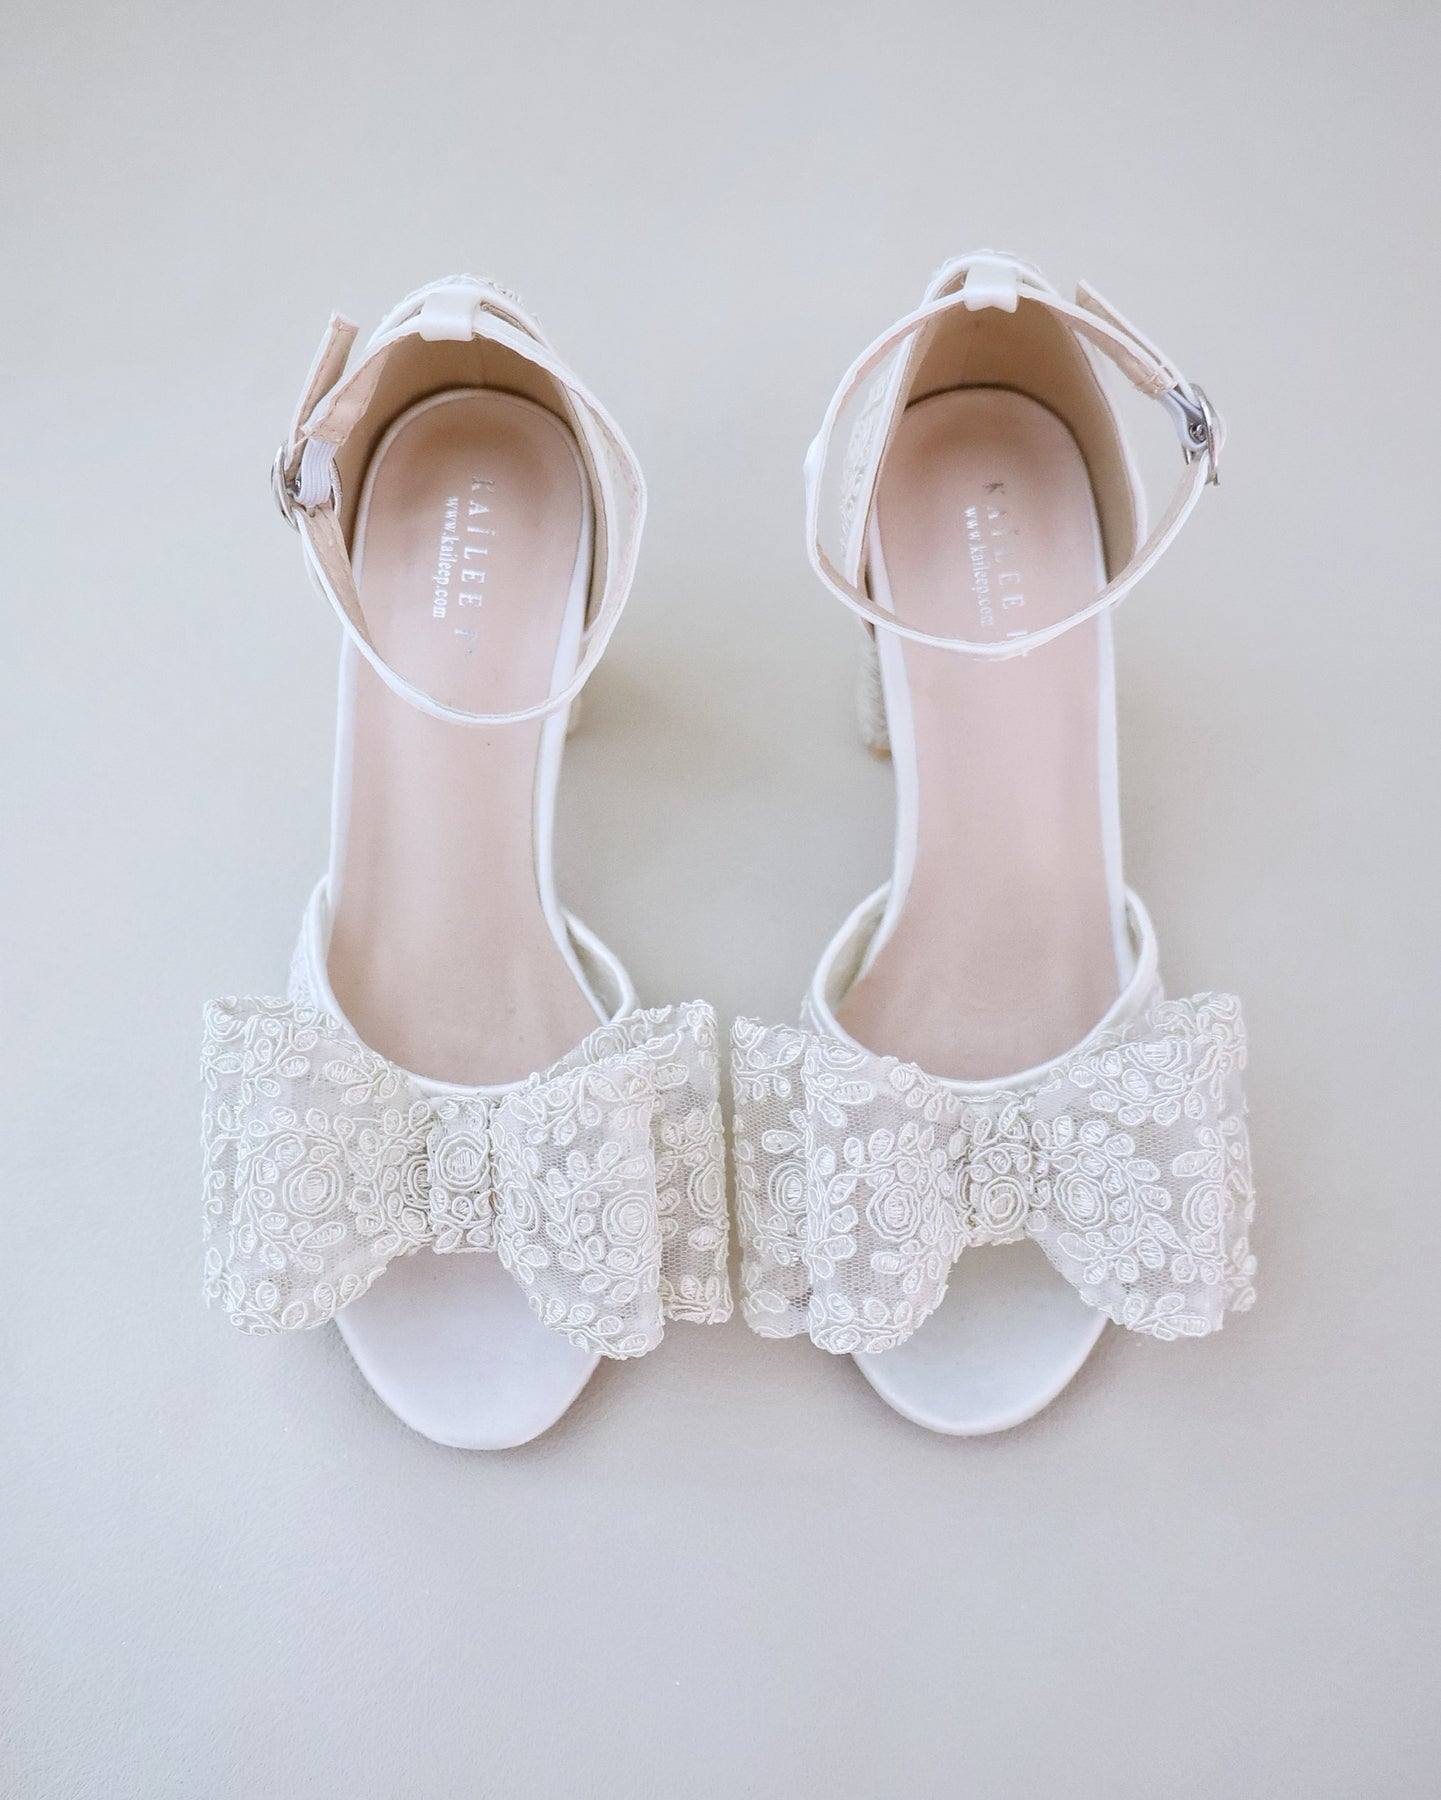 Bridal Lace Shoes, Wedding Shoes, Bridal Shoes, Bridesmaids Shoes ...